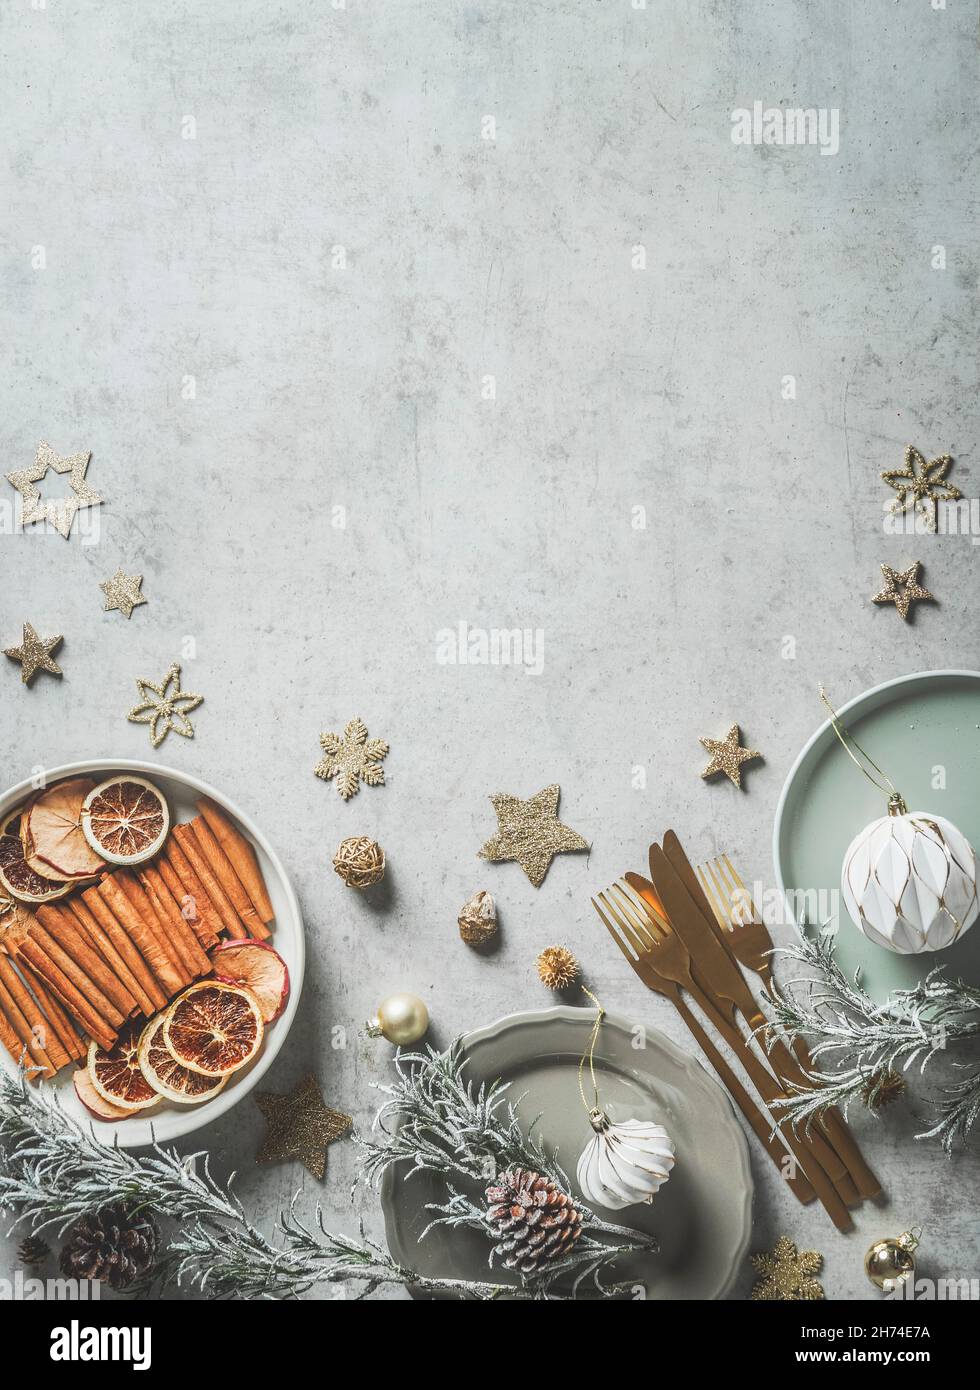 Sfondo natalizio con piatti, posate d'oro, decorazione, stelle, bastoni di cannella, fette d'arancia, bauble, coni di pino e verdi di abete su conc. grigio chiaro Foto Stock